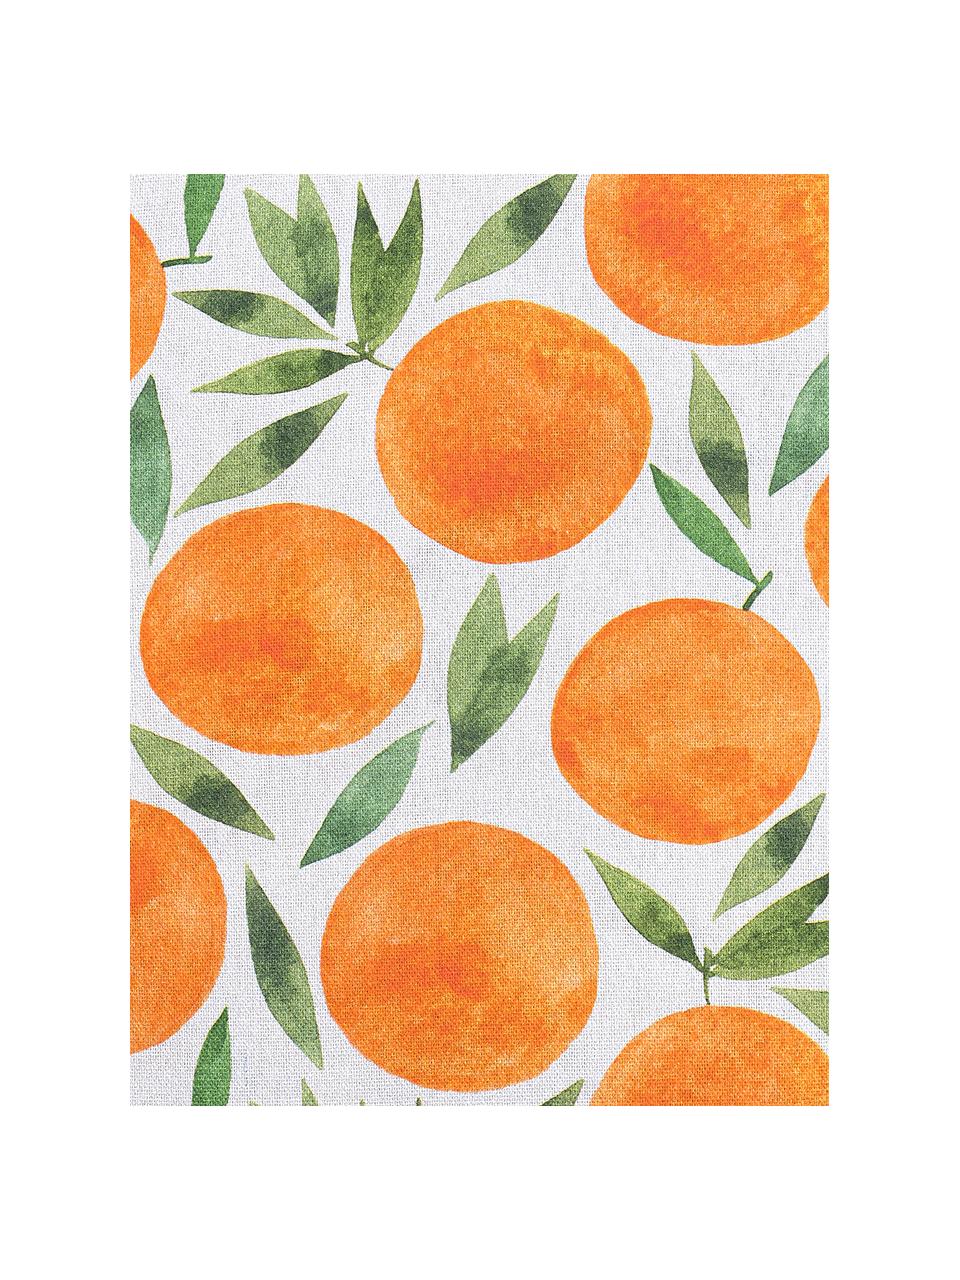 Kissenhülle Orange mit sommerlichem Motiv, Webart: Halbpanama, Orange, Weiss, Grün, 50 x 50 cm